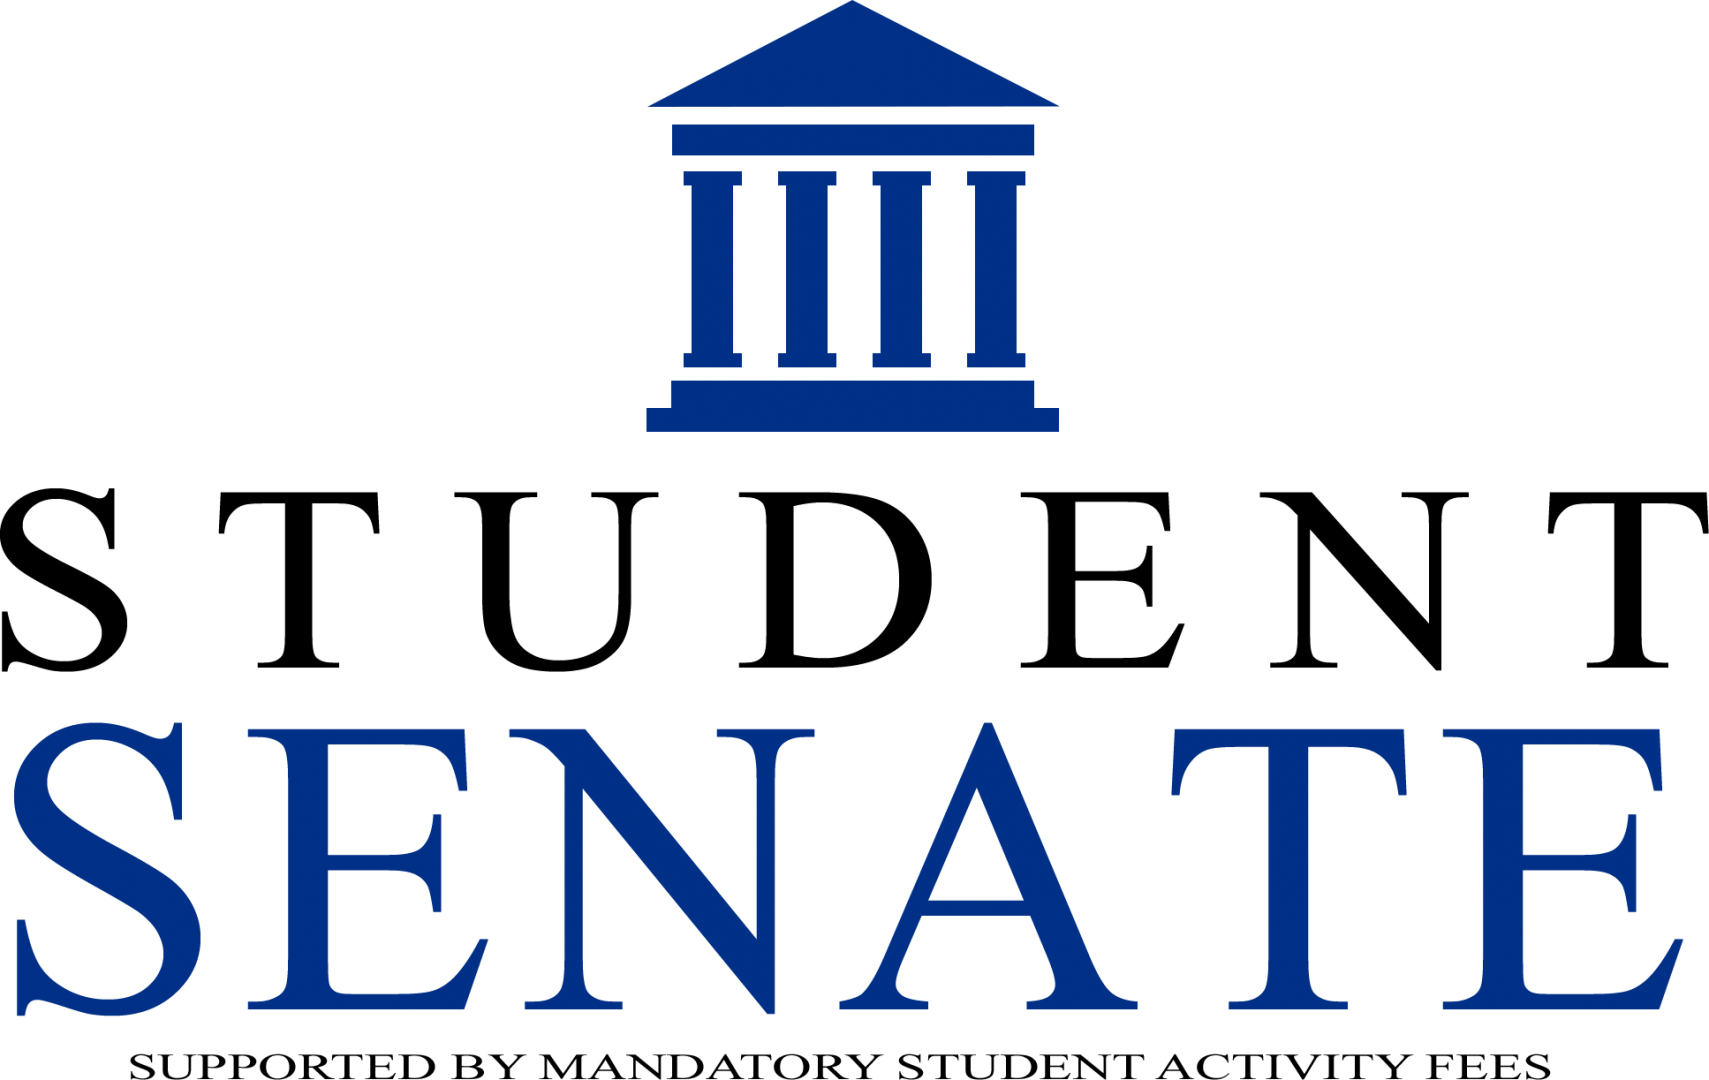 Undergraduate Student Senate Logo